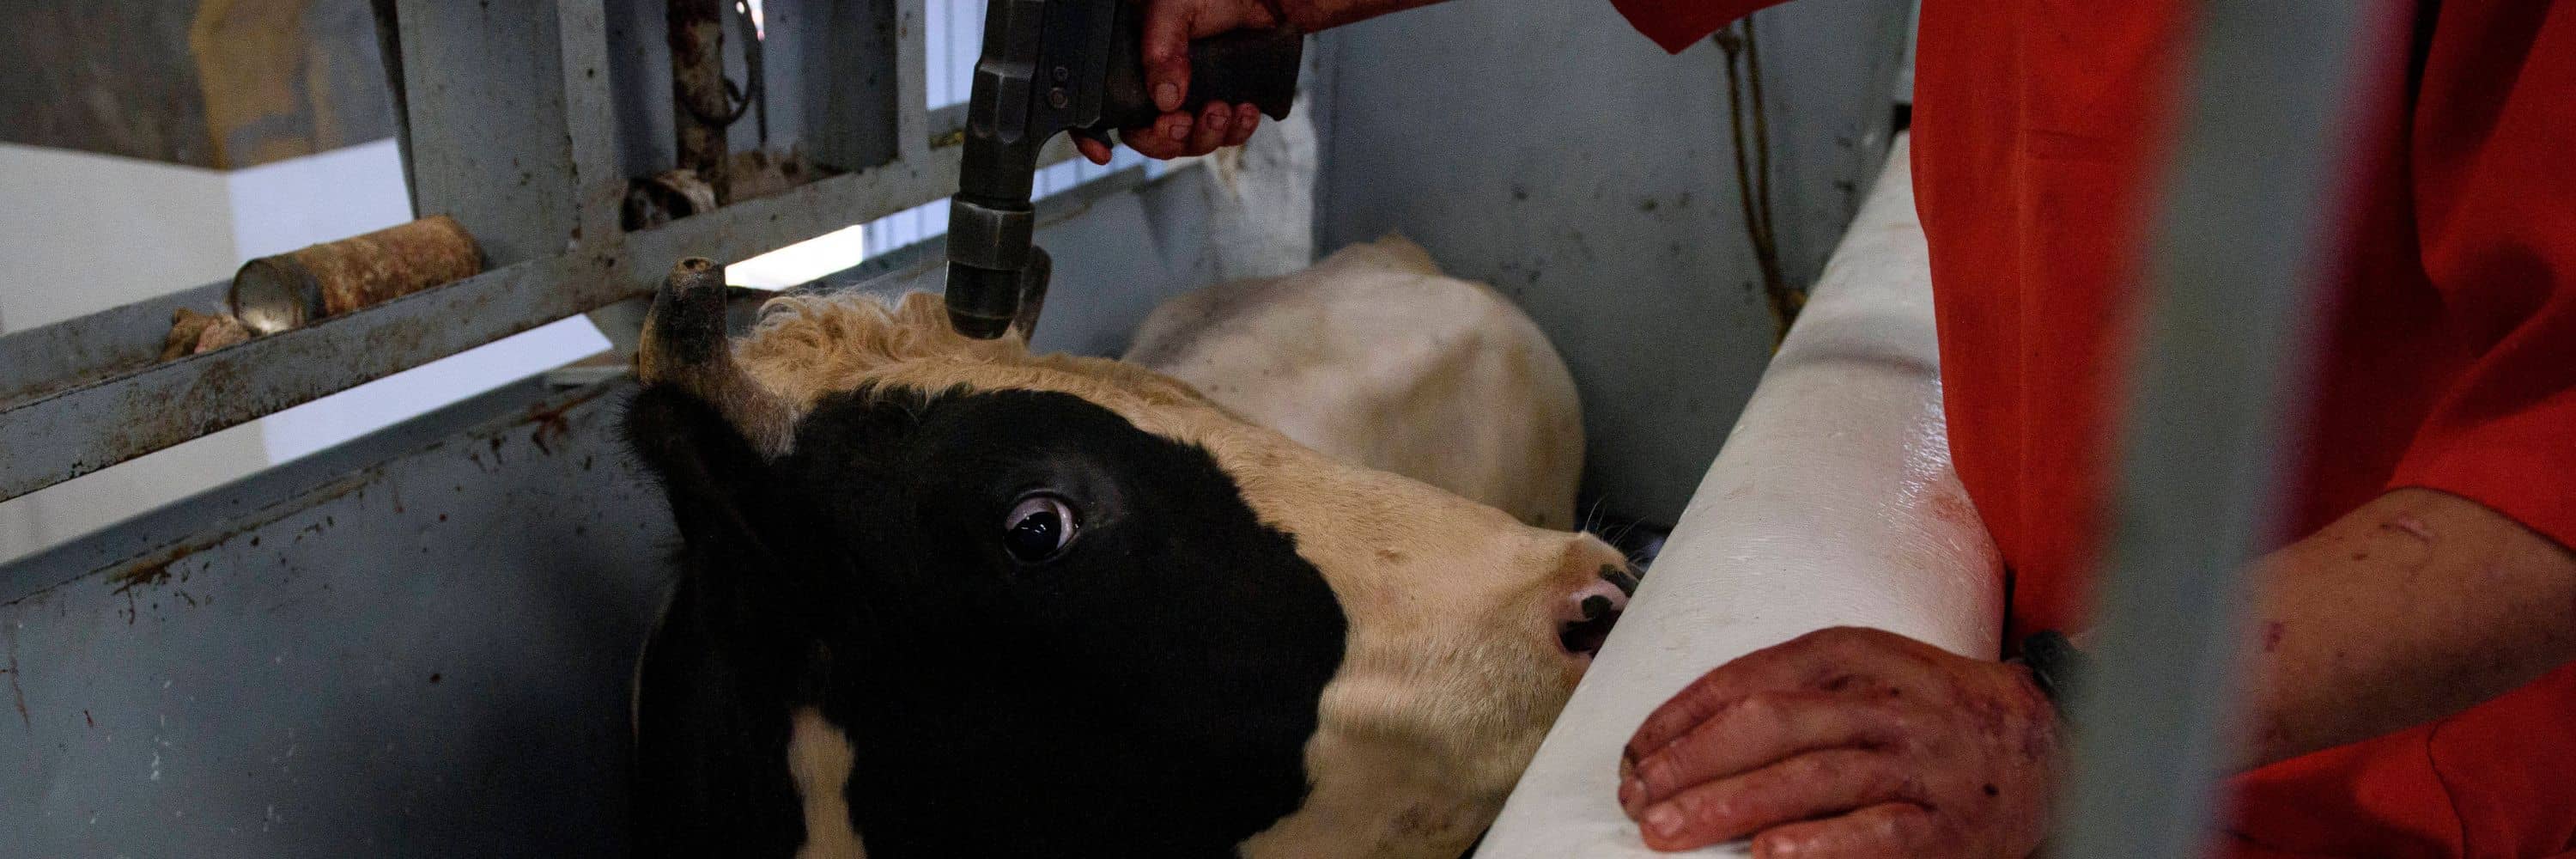 Un operario apunta con una pistola a una vaca en la cabeza.